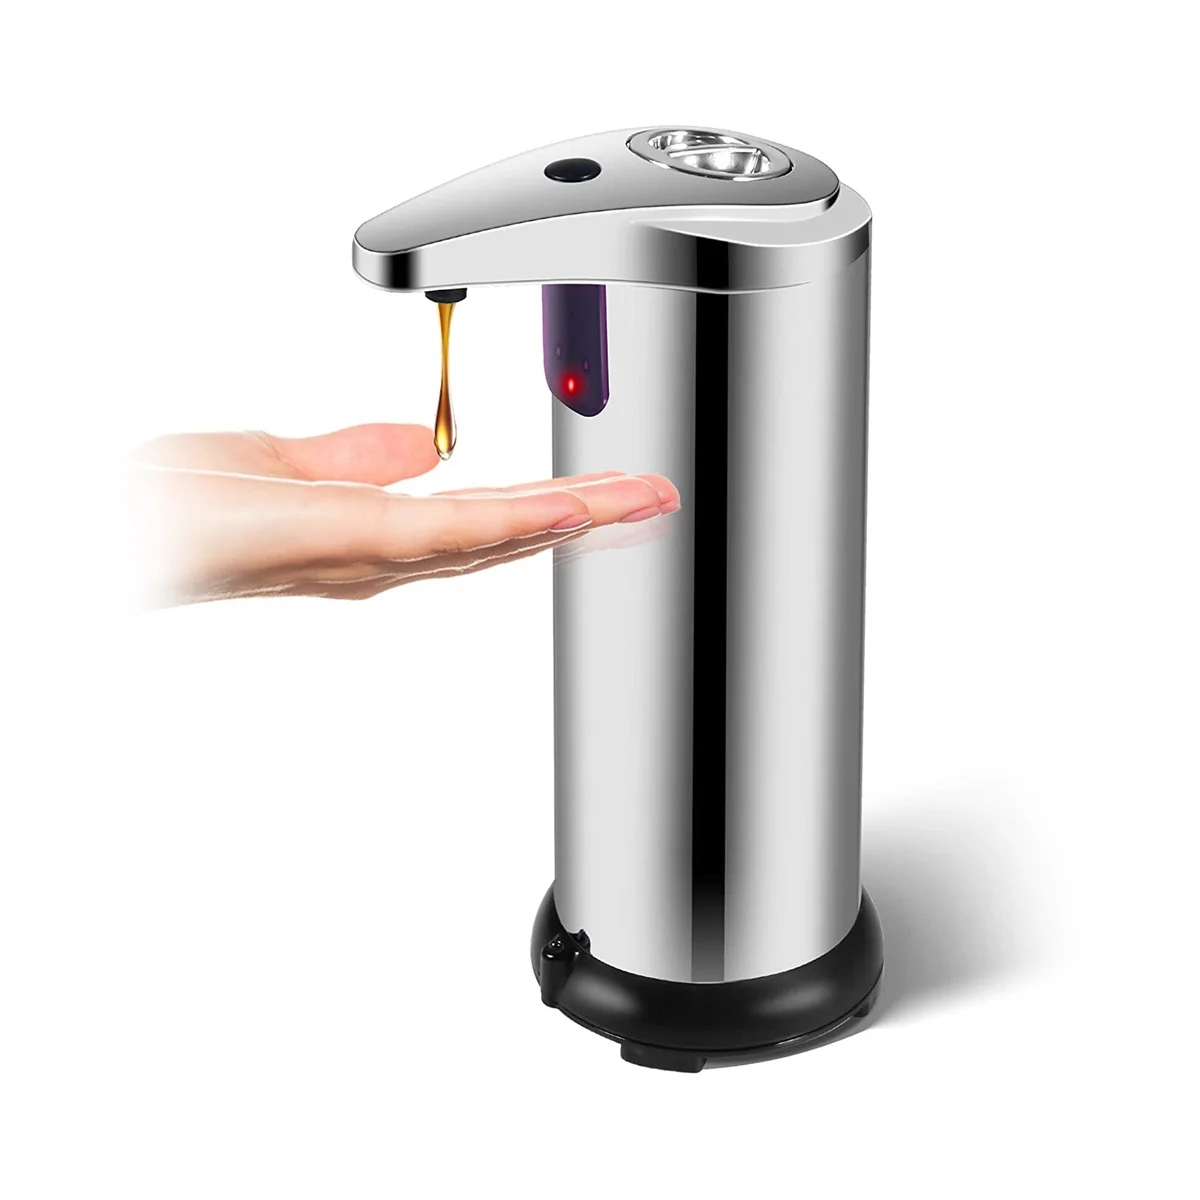 

Автоматический Бесконтактный Диспенсер для мыла, умный диспенсер для мыла с инфракрасным датчиком движения для кухни и ванной комнаты